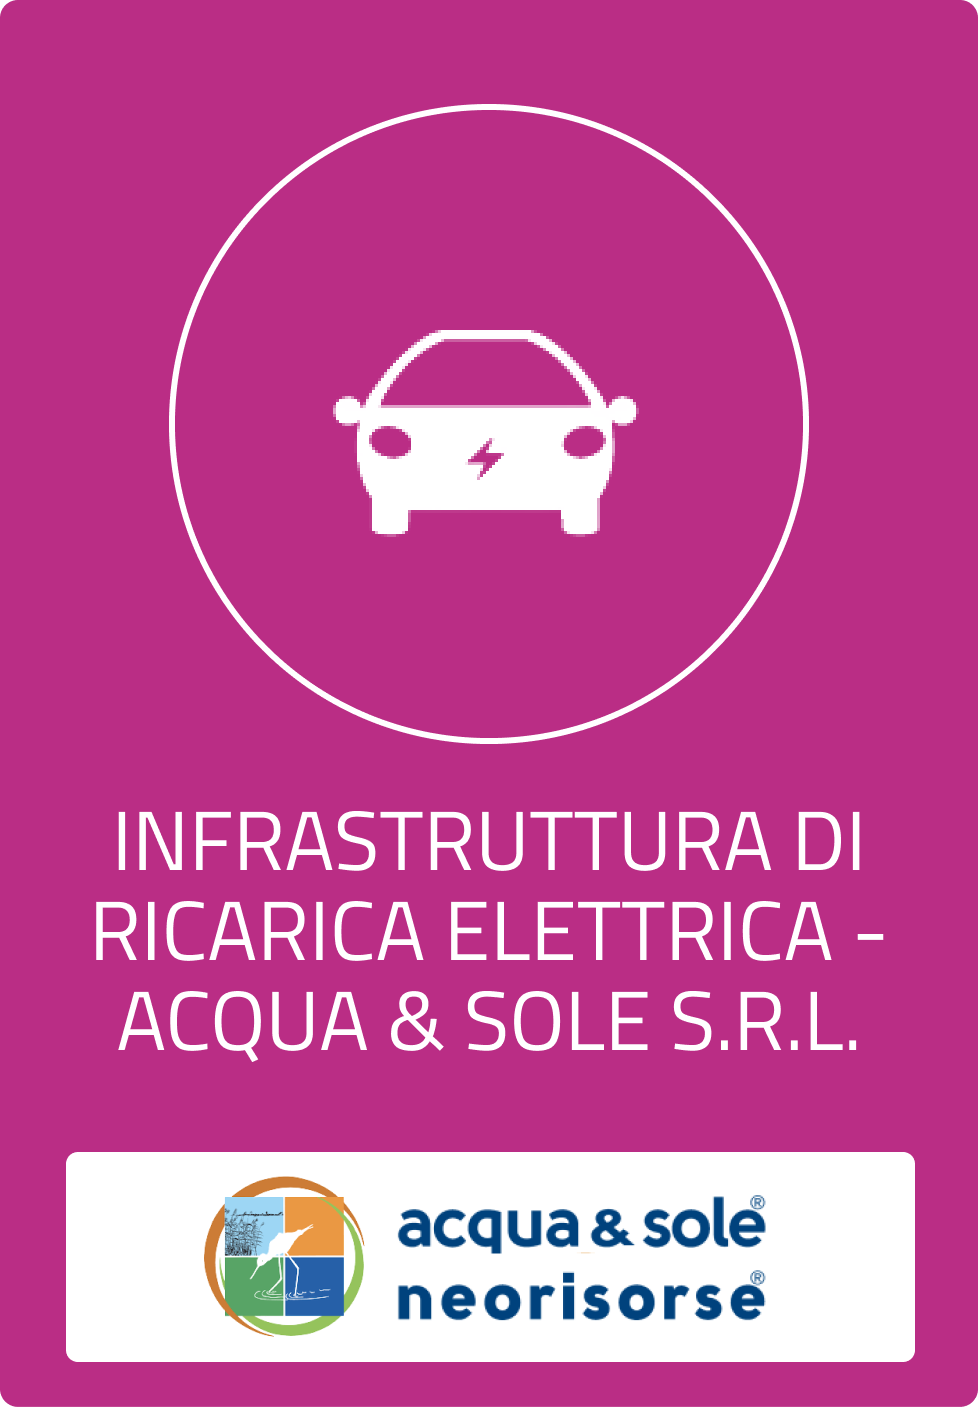 Infrastruttura di ricarica elettrica - Acqua & Sole S.r.l.